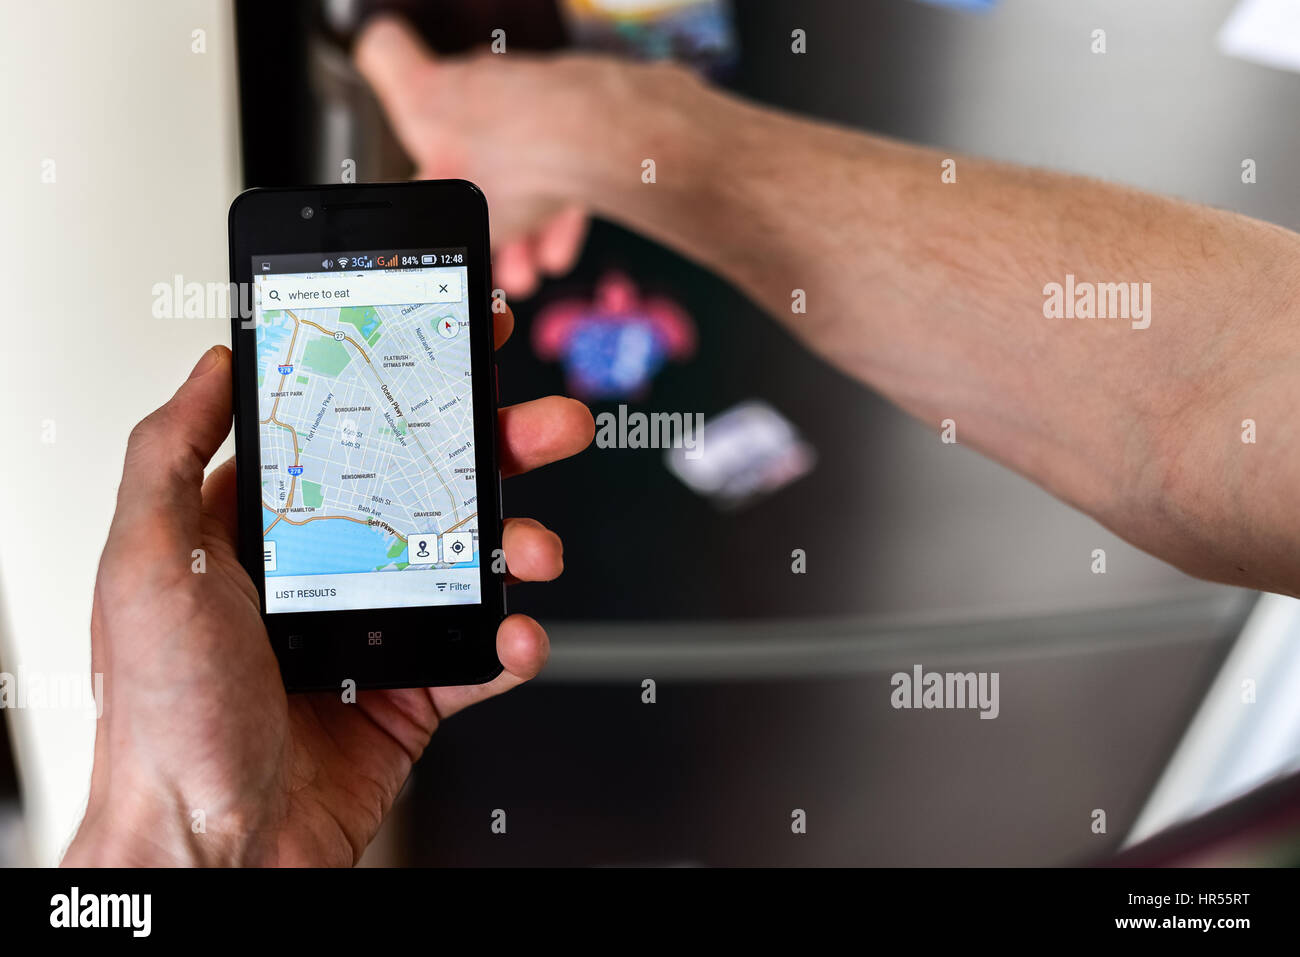 Nahaufnahme einer Person die Hände halten Smartphone Stadtplan auf dem Bildschirm anzeigen und Online-Suche nach Orten auf dieser Karte zu essen. Kühlschrank mit Magneten o Stockfoto